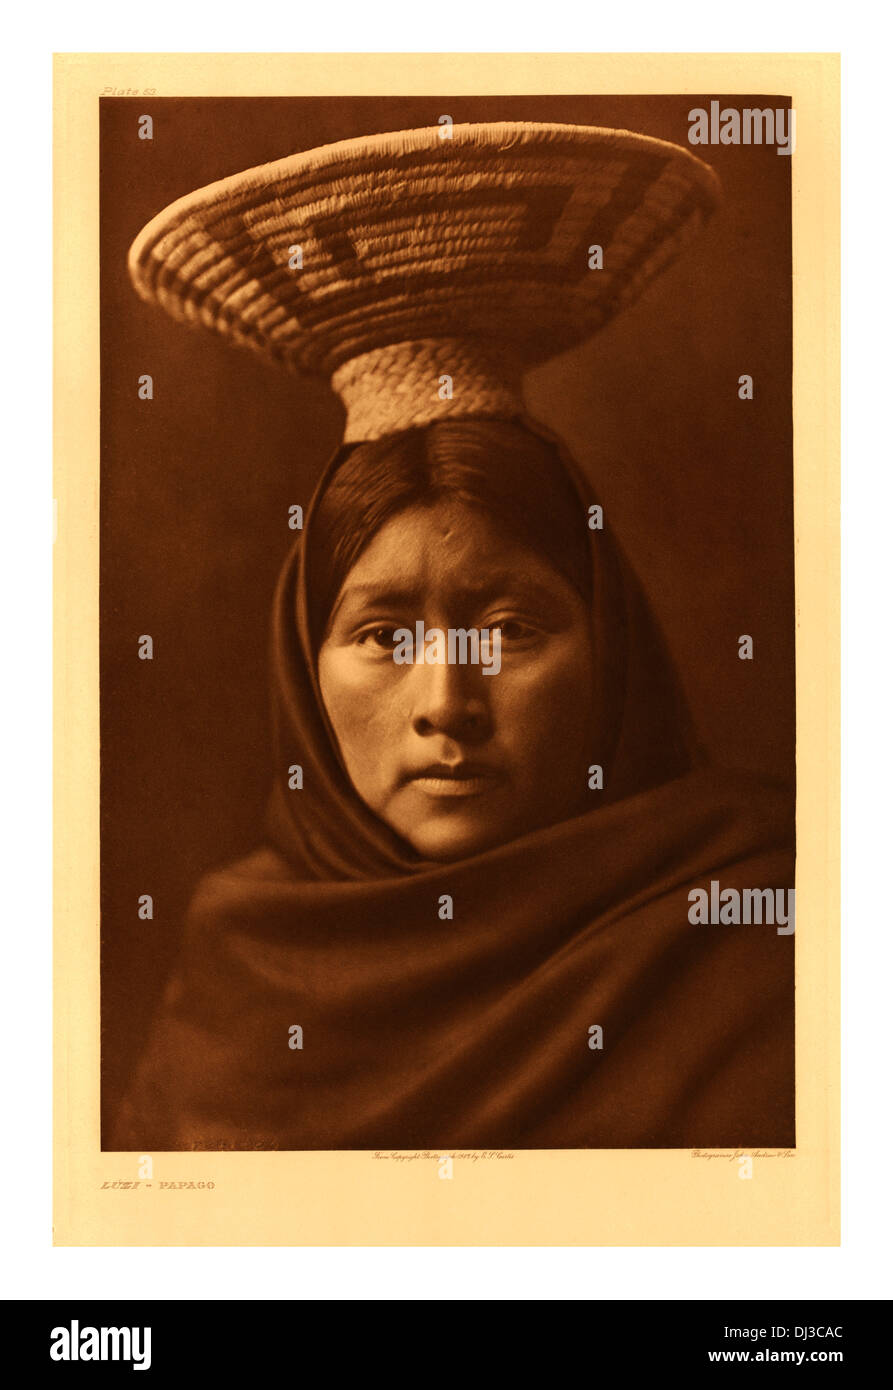 Début des années 1900, d'une image aux tons sépia Papago ( Tohono O'odham) Native North American Indian woman Banque D'Images